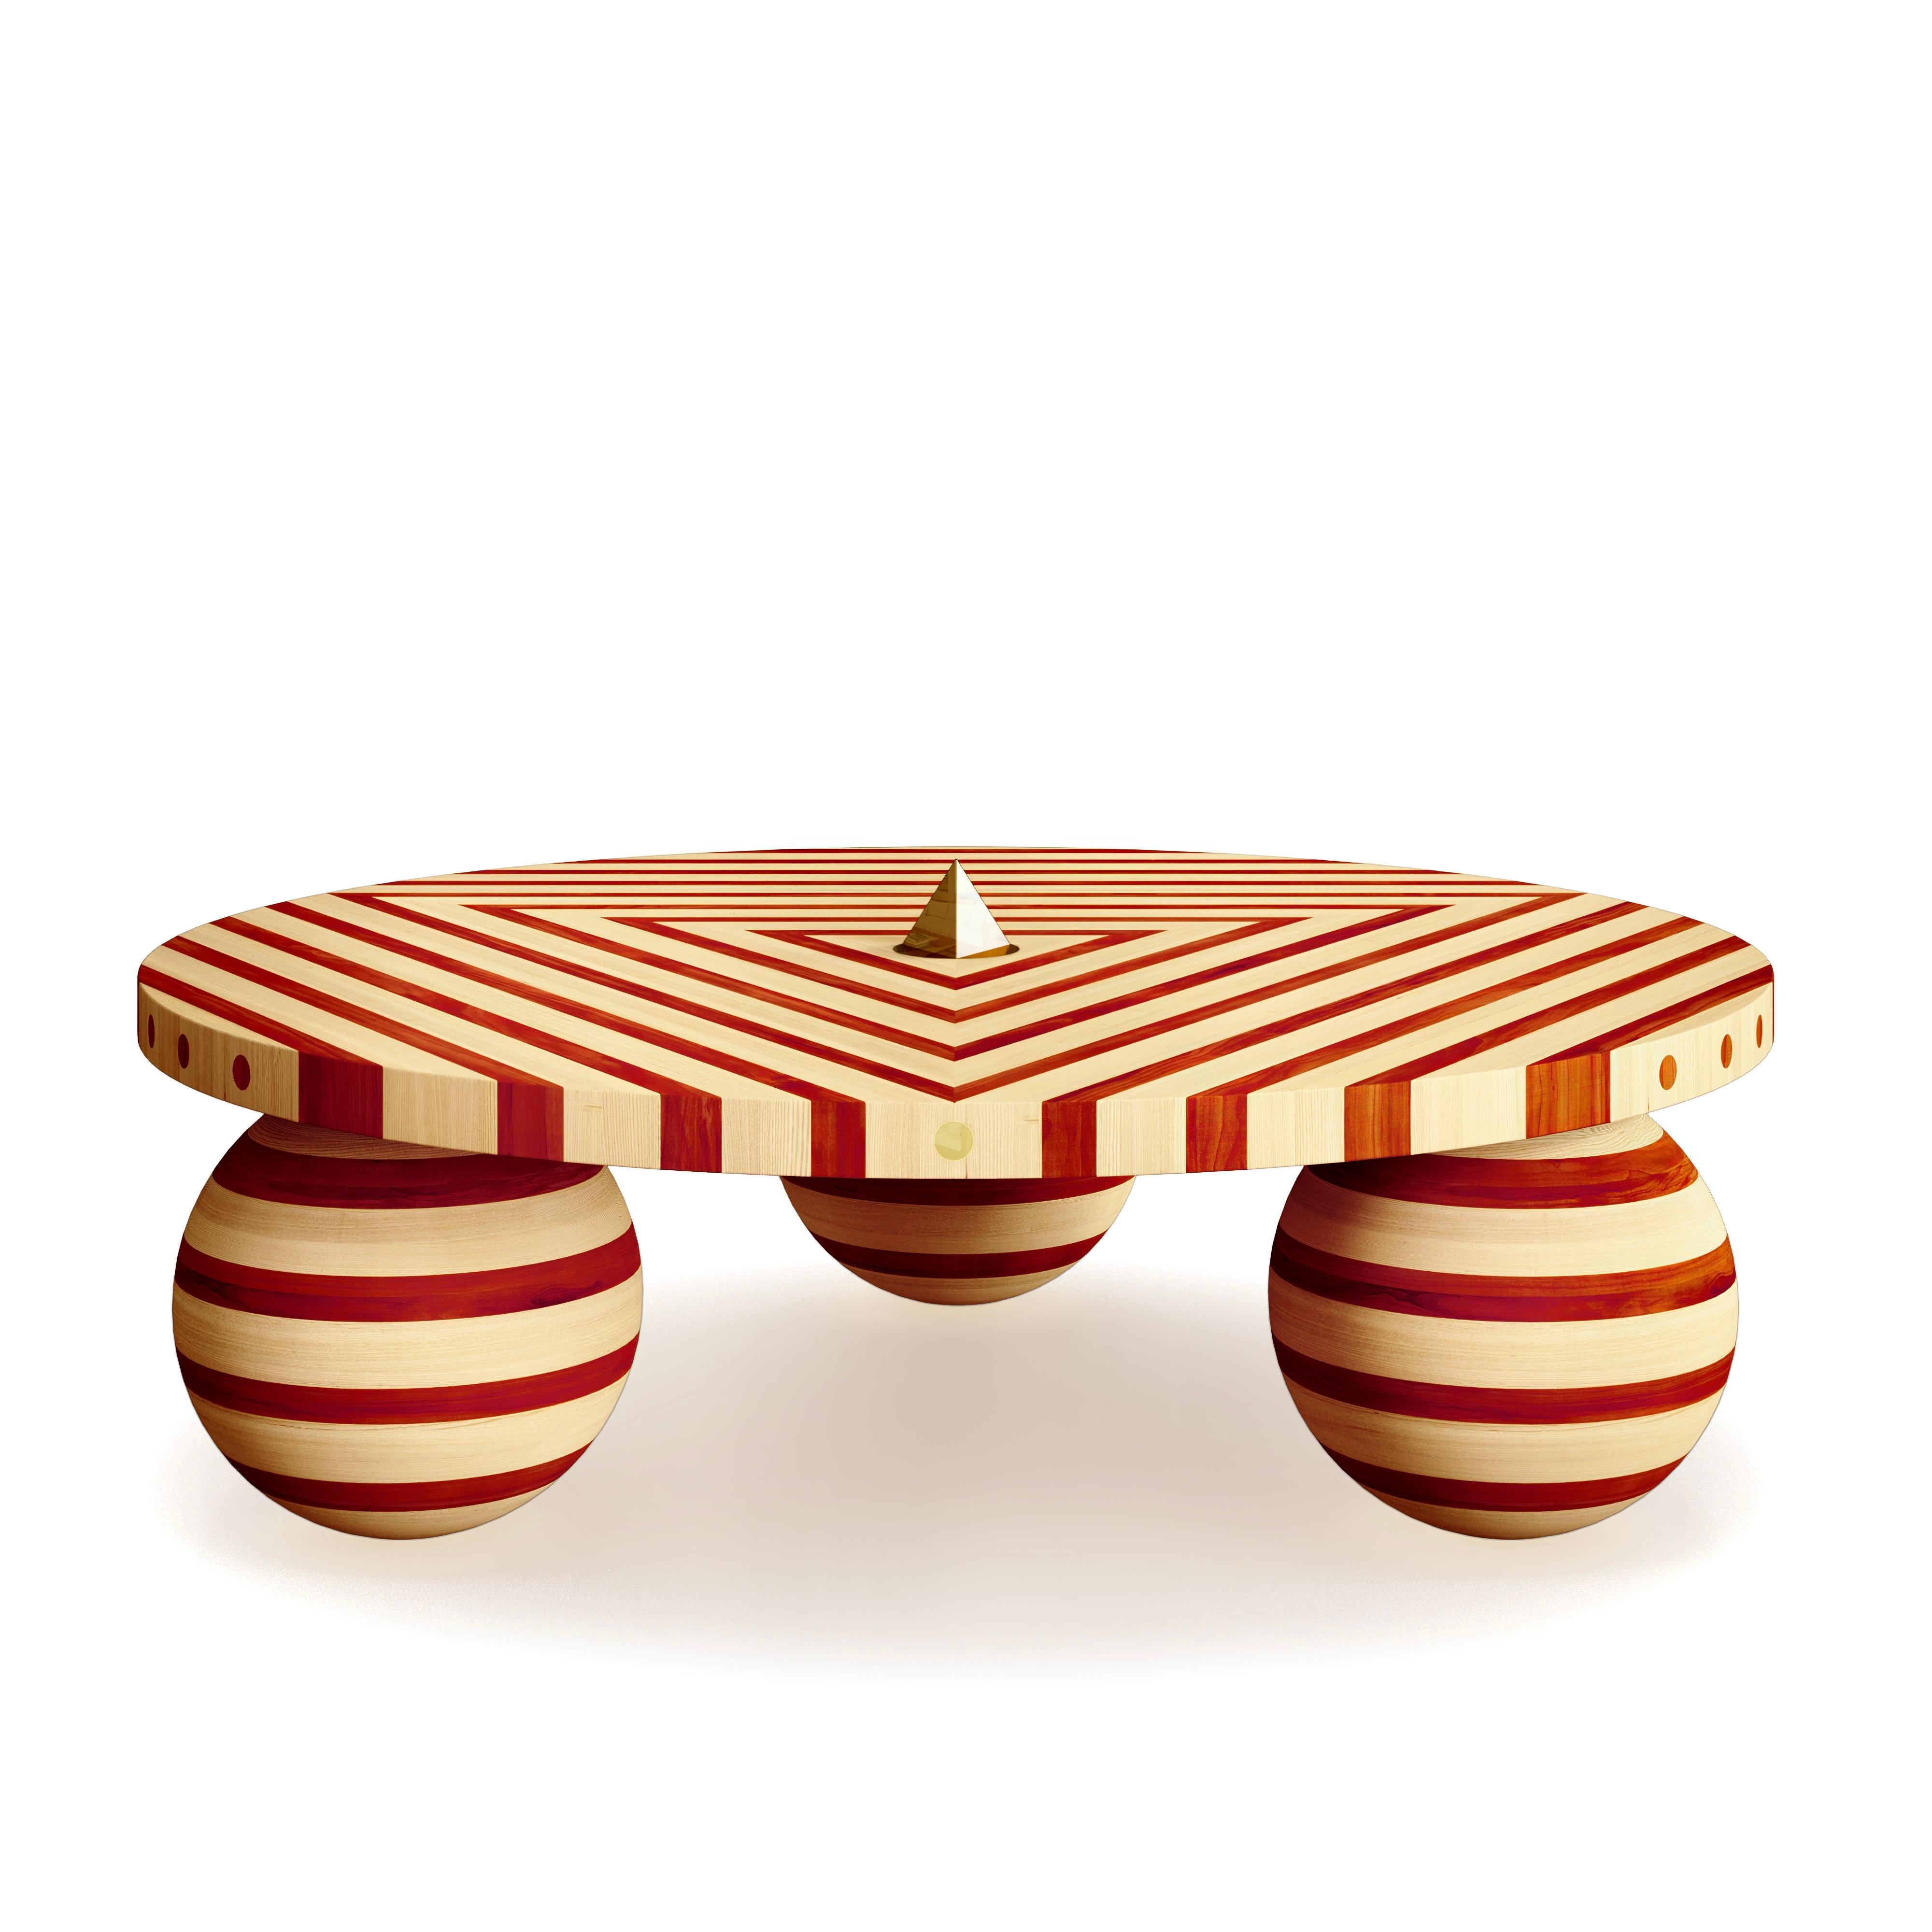 Cette superbe table basse fait partie de la série Striped de Troy Smith Studio.

Cette table basse est totalement unique et originale. Elle est fabriquée à 100% à la main à partir de bois d'érable massif d'Amérique du Nord et de padauk d'Afrique. Le